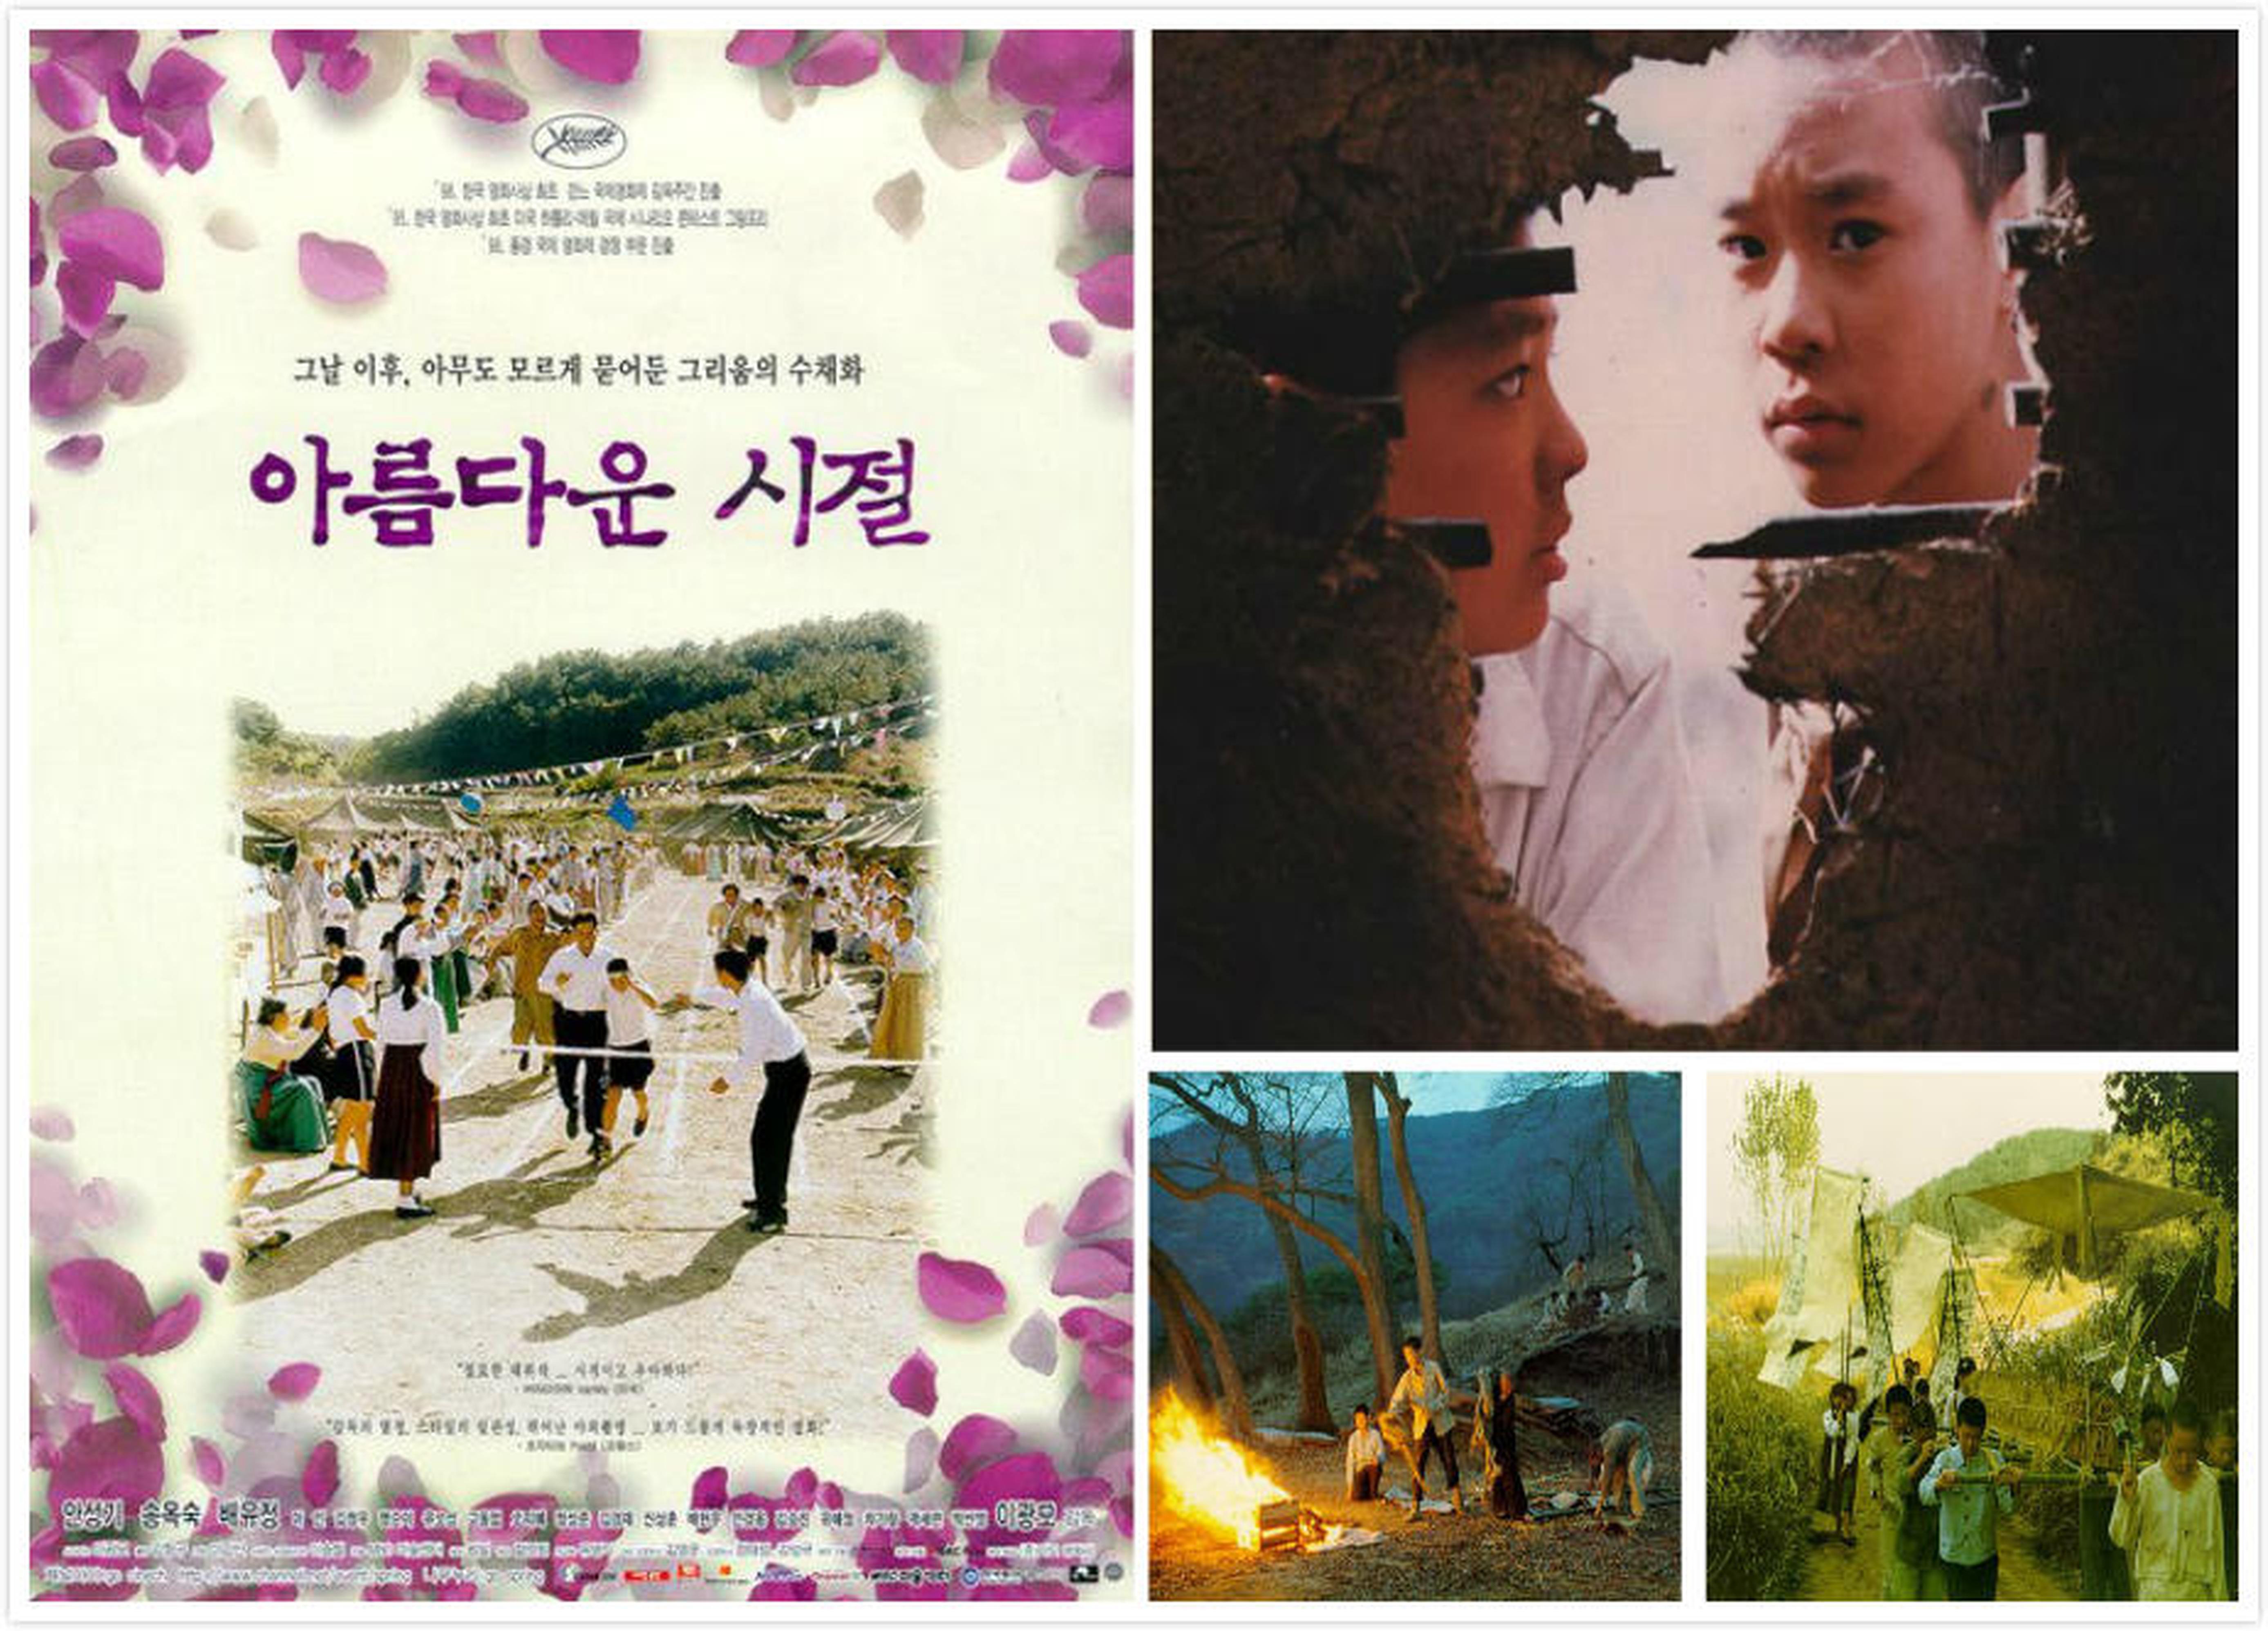 【1990-2000】《美丽的时节》(1998)导演李光模。故事有些像《牯岭街》的杨德昌，场景又似《童年往事》的侯孝贤，导演凭此一片留名韩国影史。